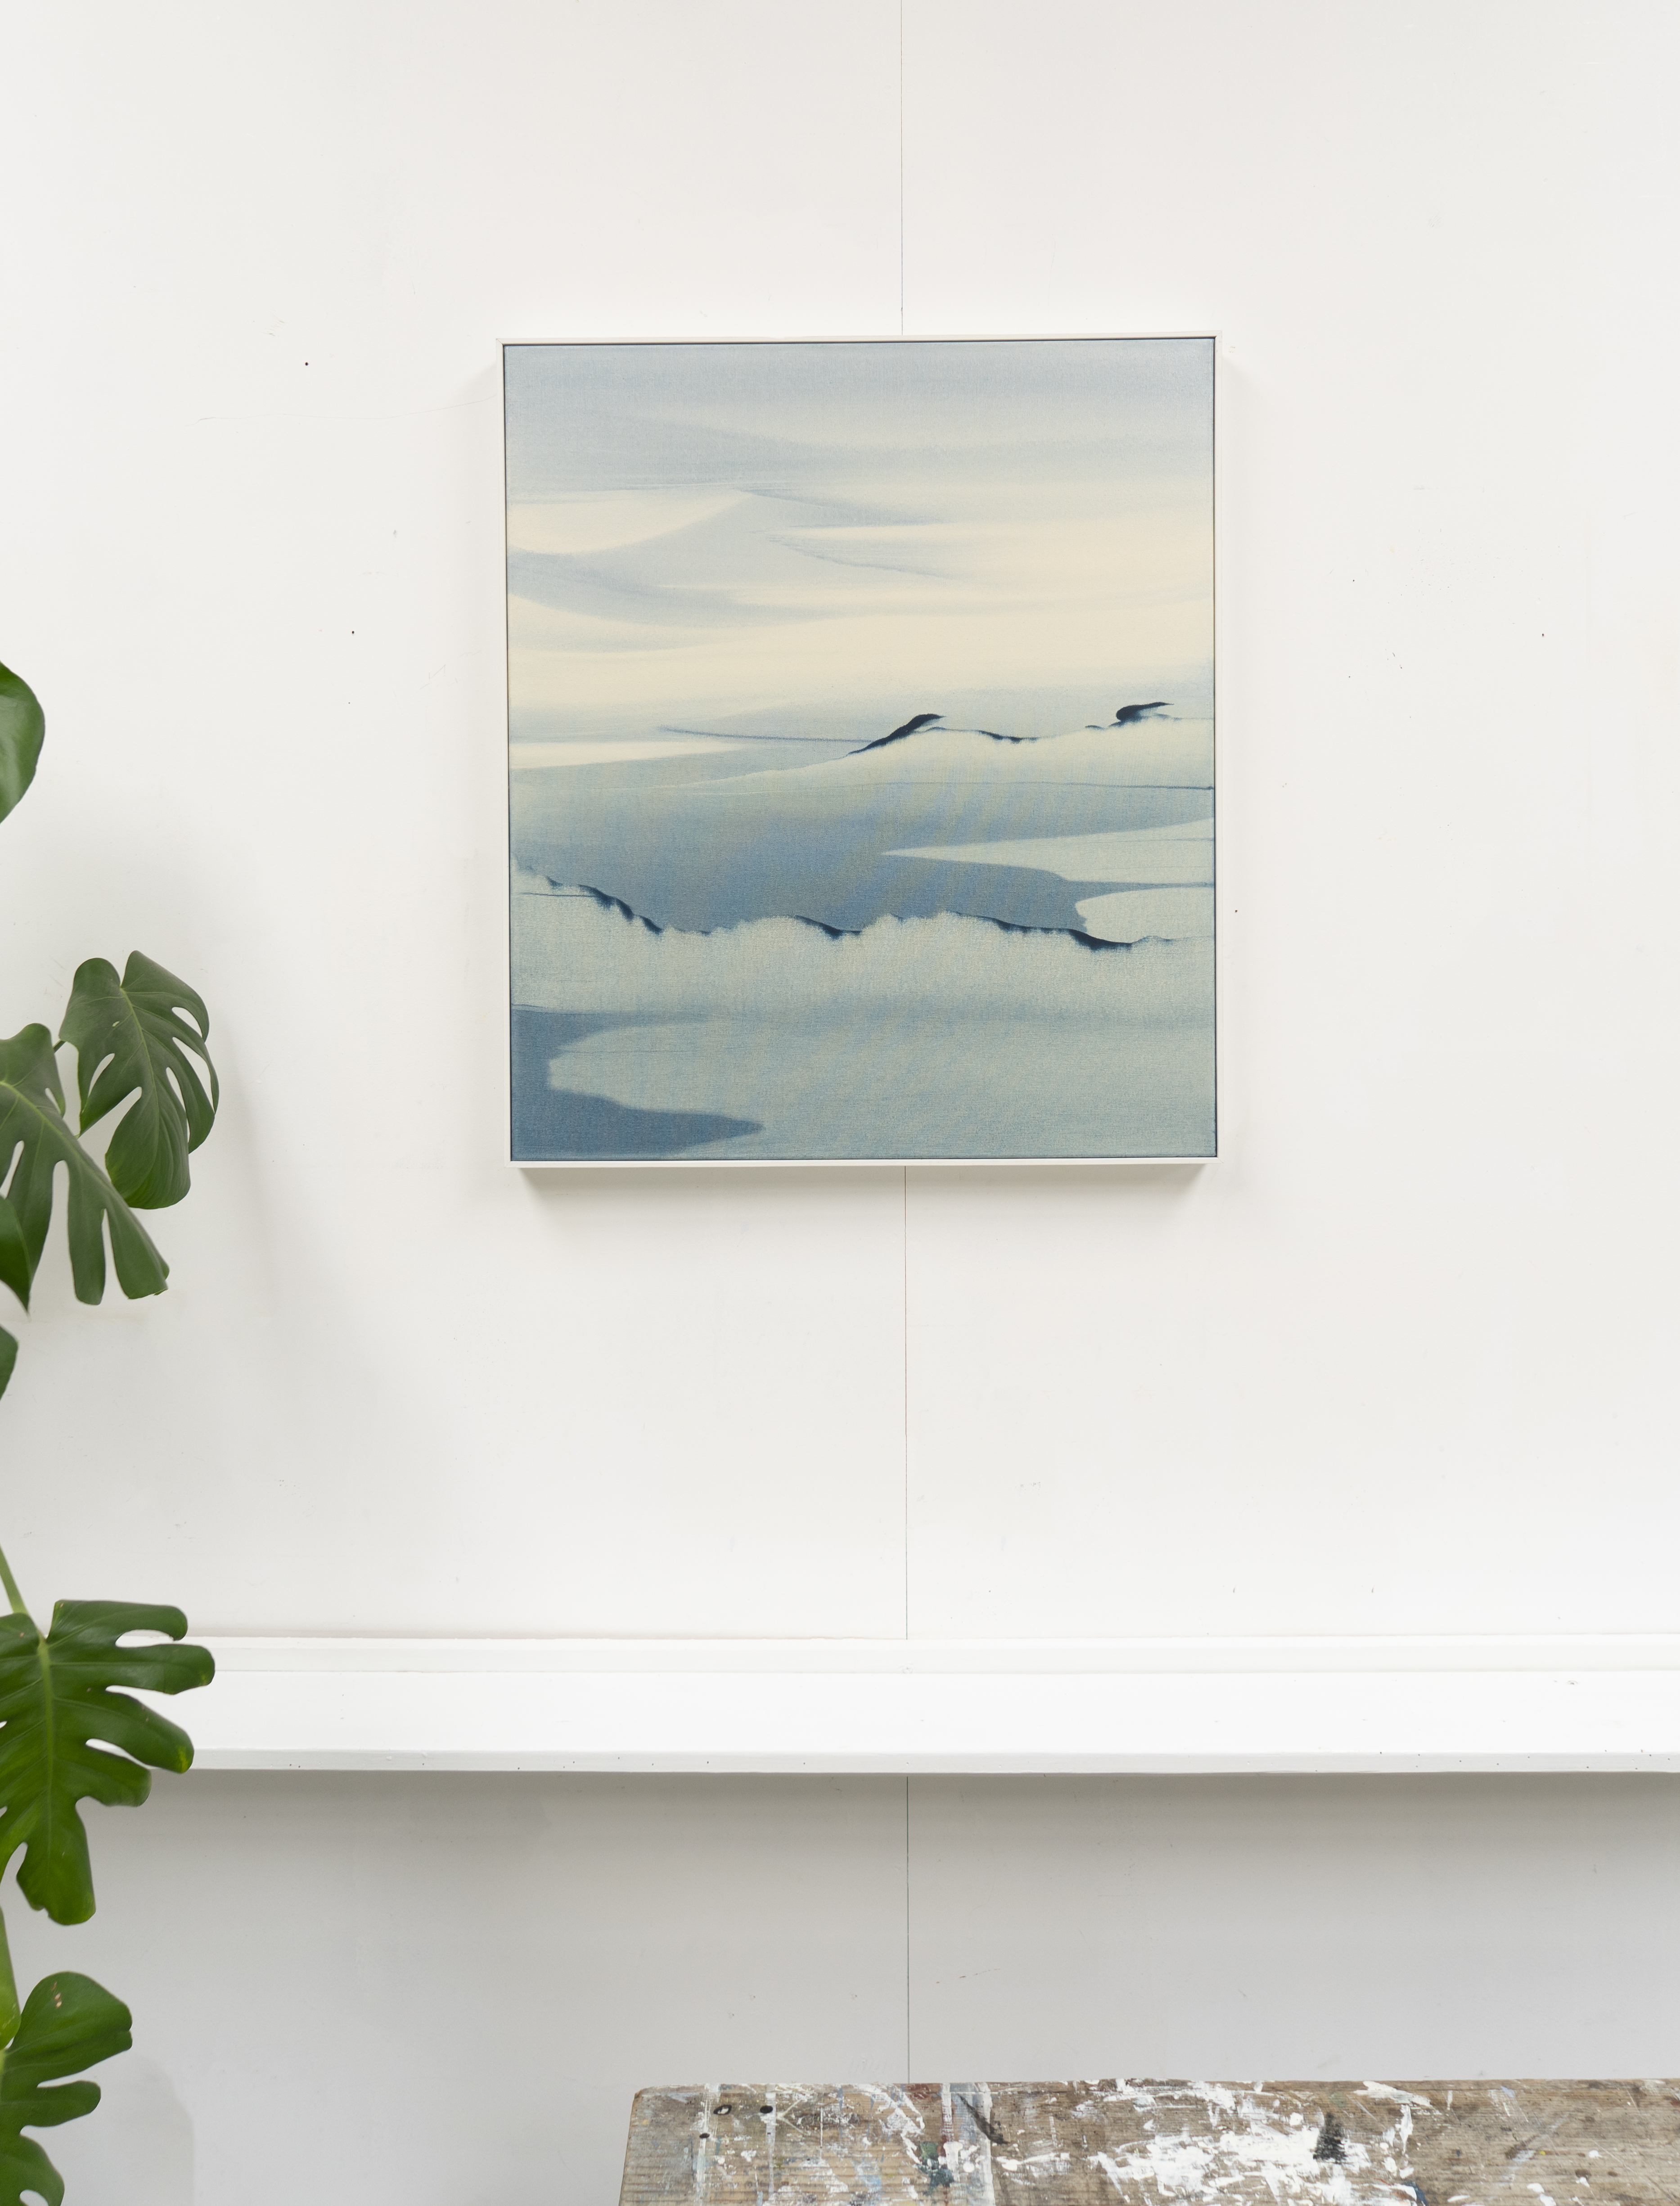 Eva Ullrich - 'Haze' 2019 in situ - 66 x 76 x 5cm